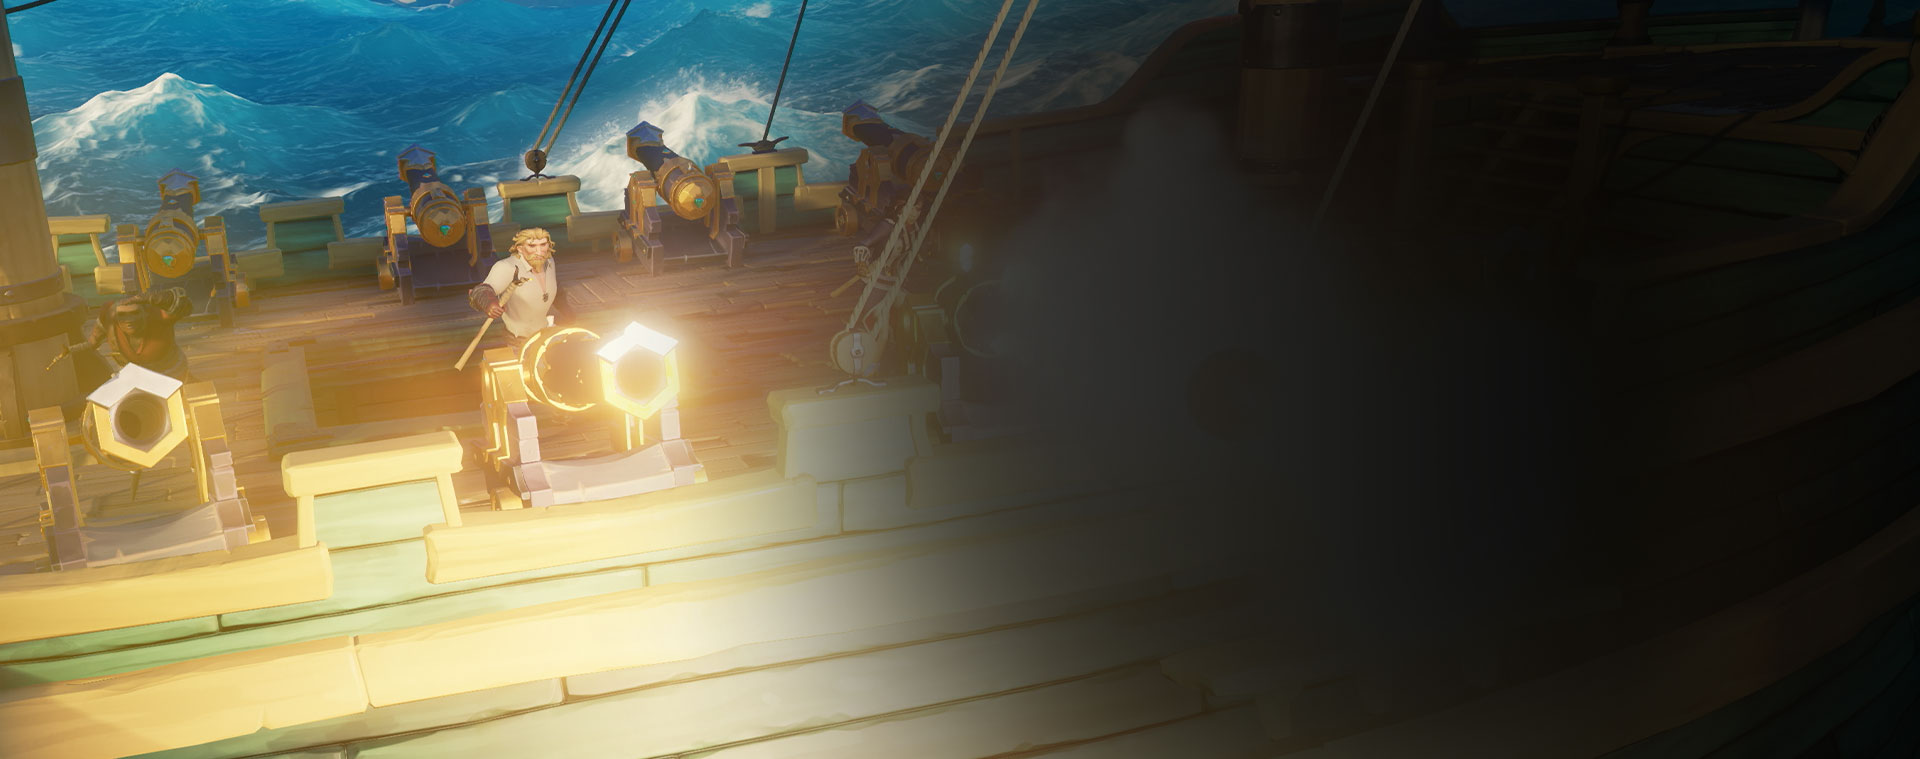 Alcuni personaggi di Sea of Thieves sparano cannonate da una nave